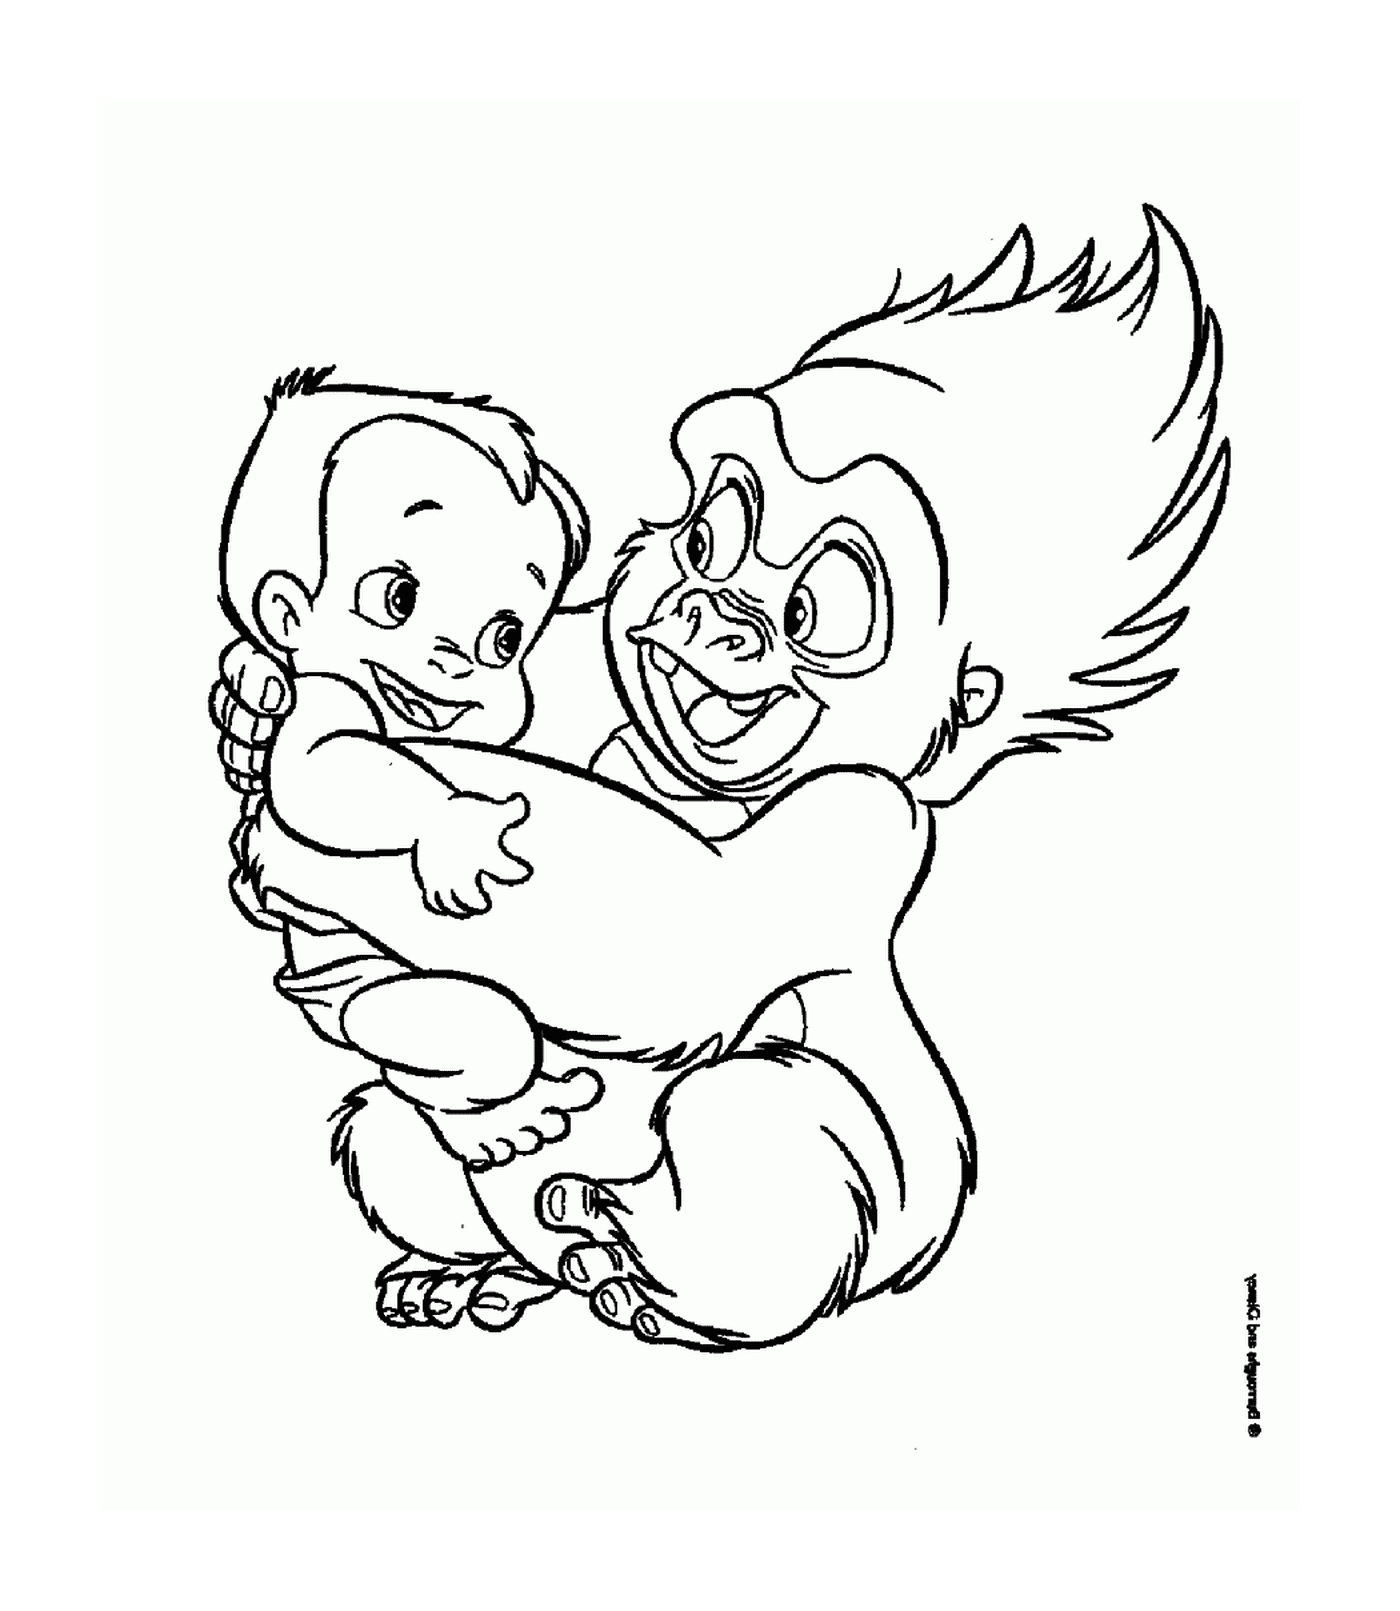  Взрослые и маленькие гориллы обнимают друг друга 